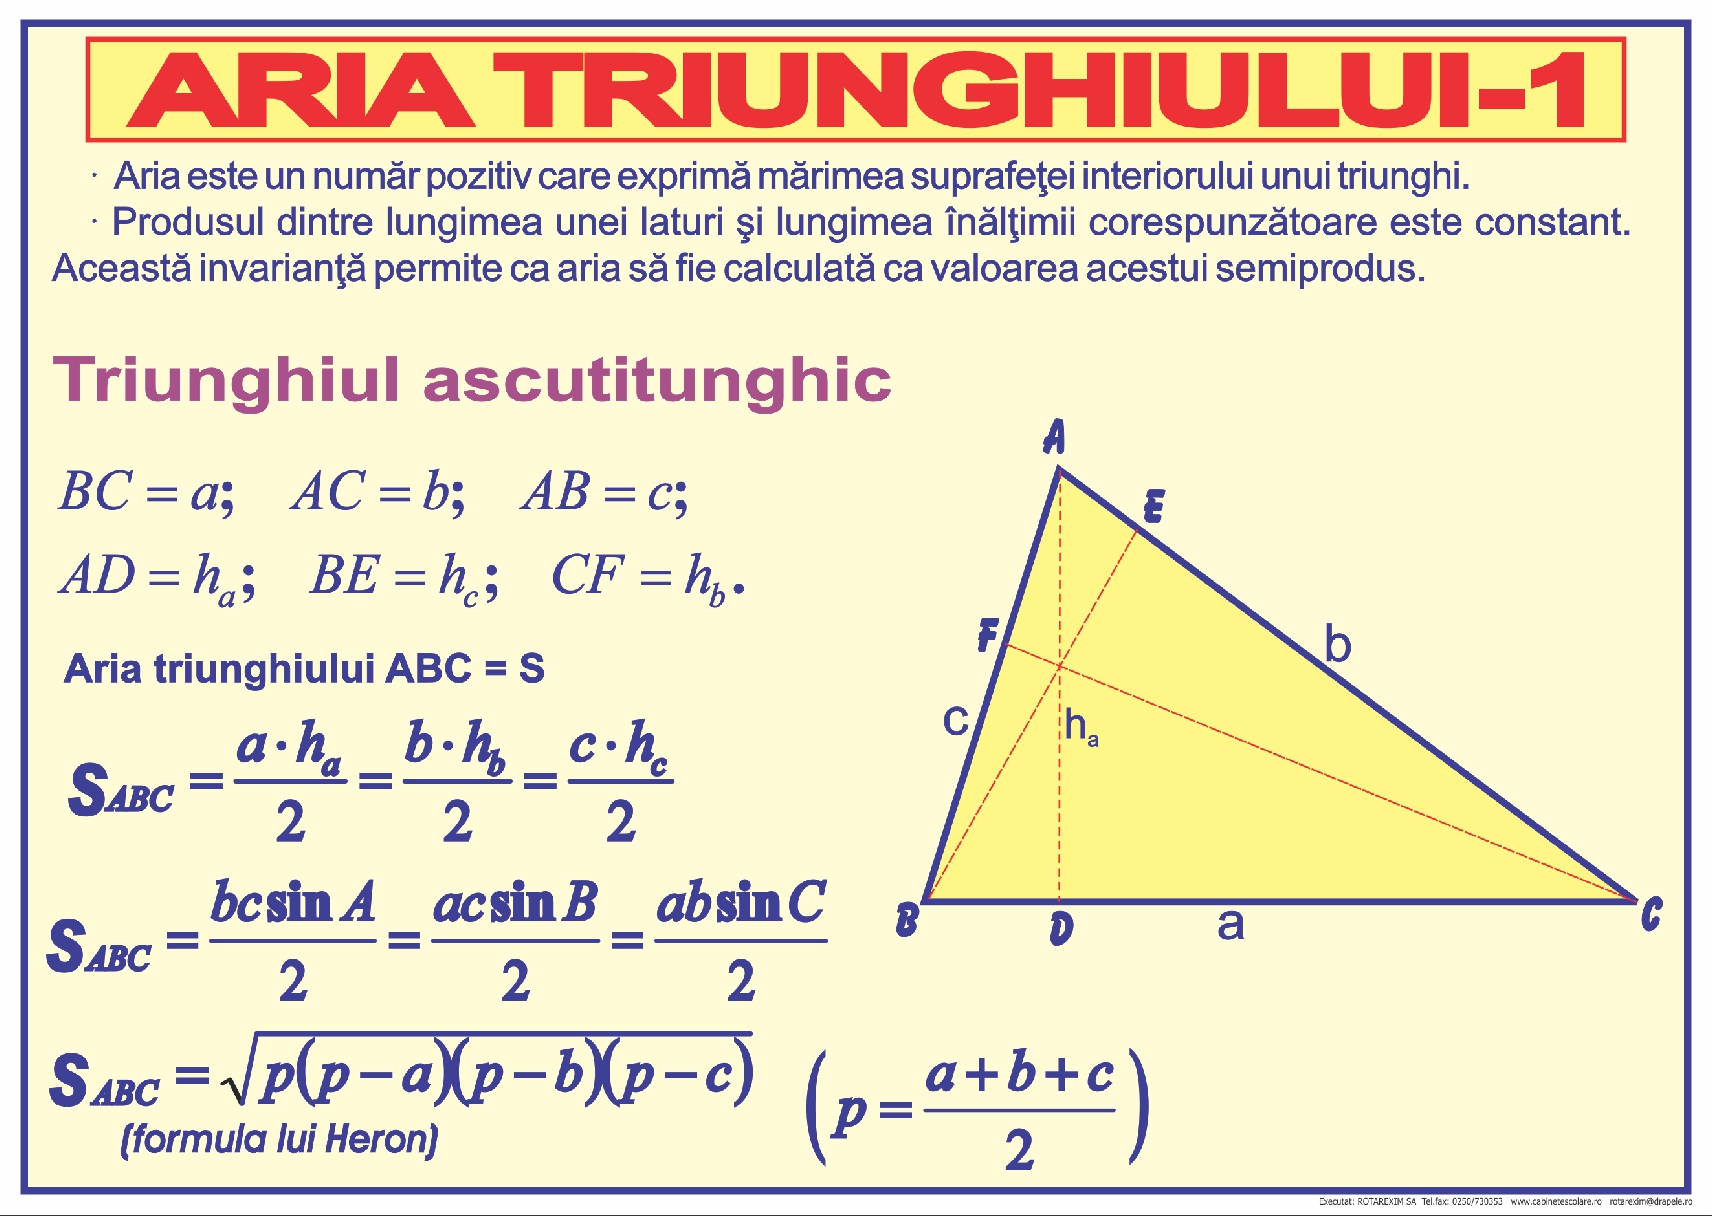 Aria triunghiului - 1